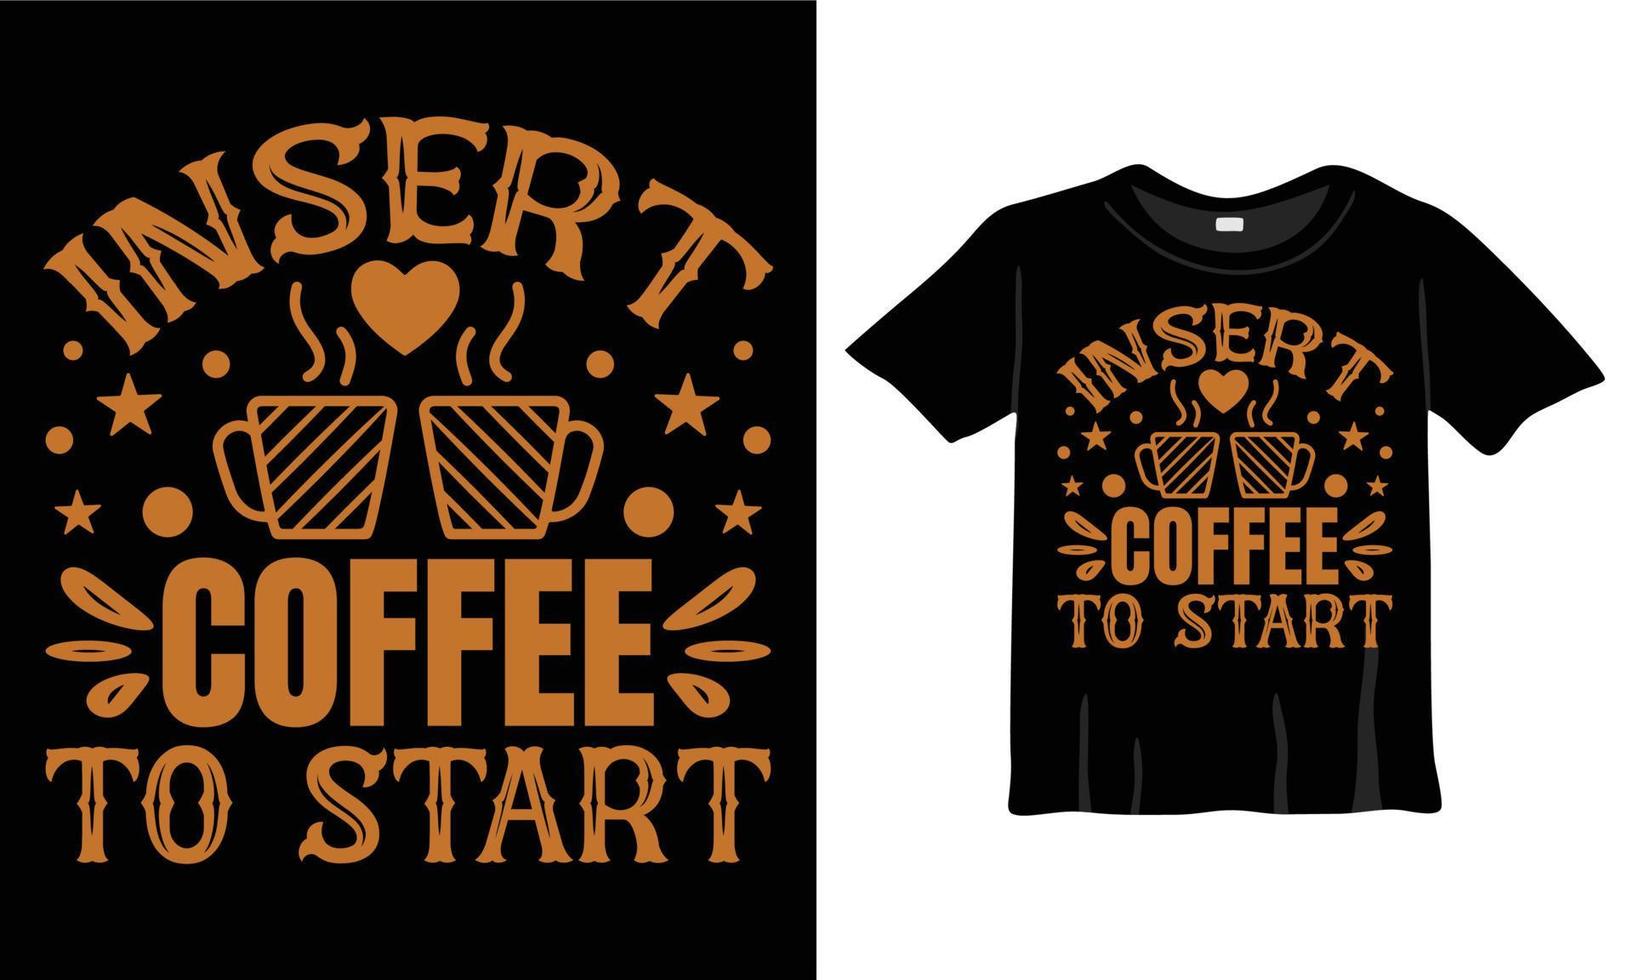 insérez du café pour commencer la conception de t-shirts, la typographie de café, la conception de calligraphie de tasse à café et le t-shirt de vecteur de café